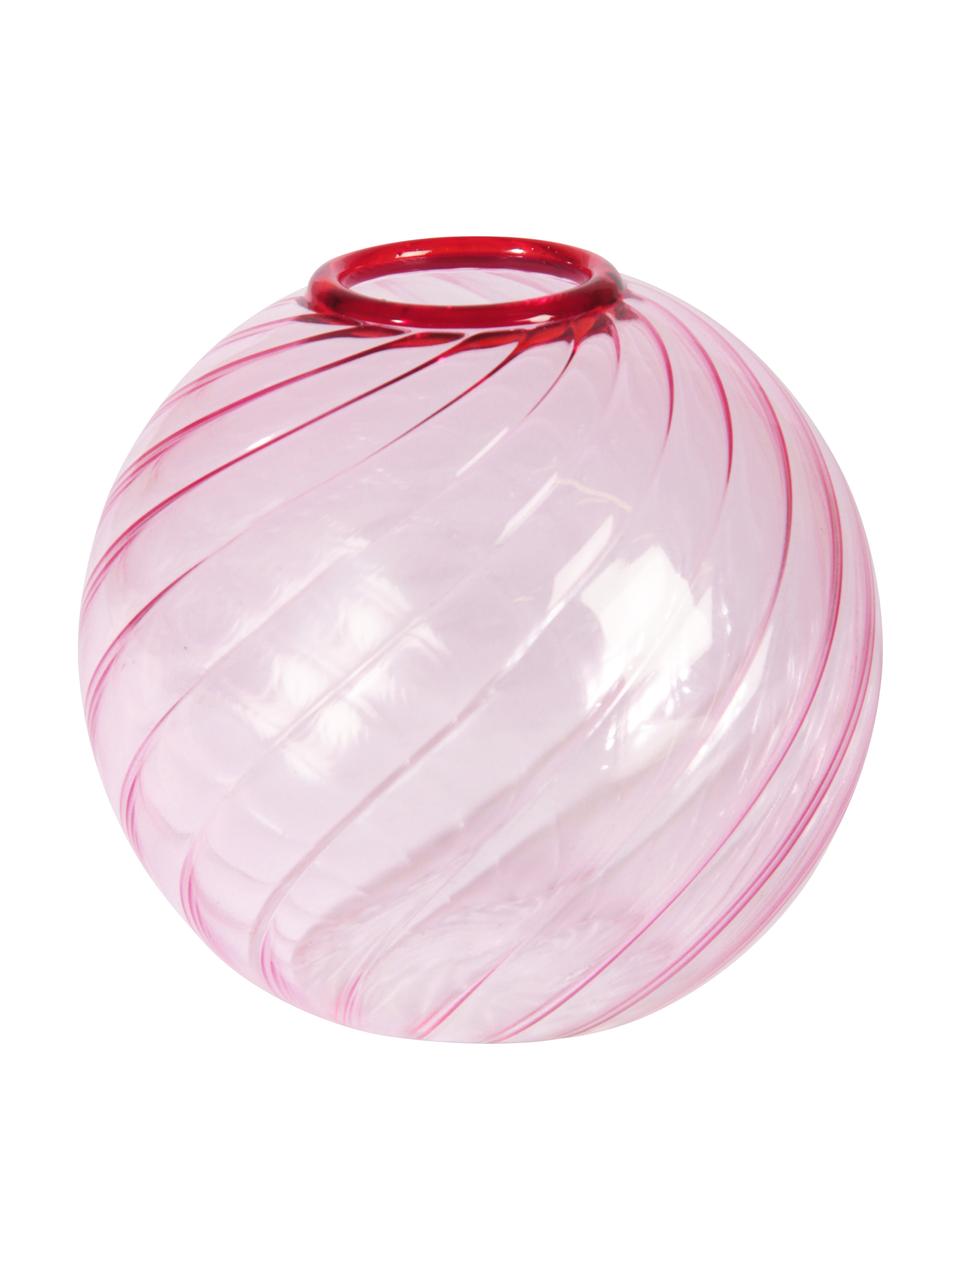 Kleine glazen vaas Spiral in roze, Glas, Roze, Ø 9 x H 9 cm